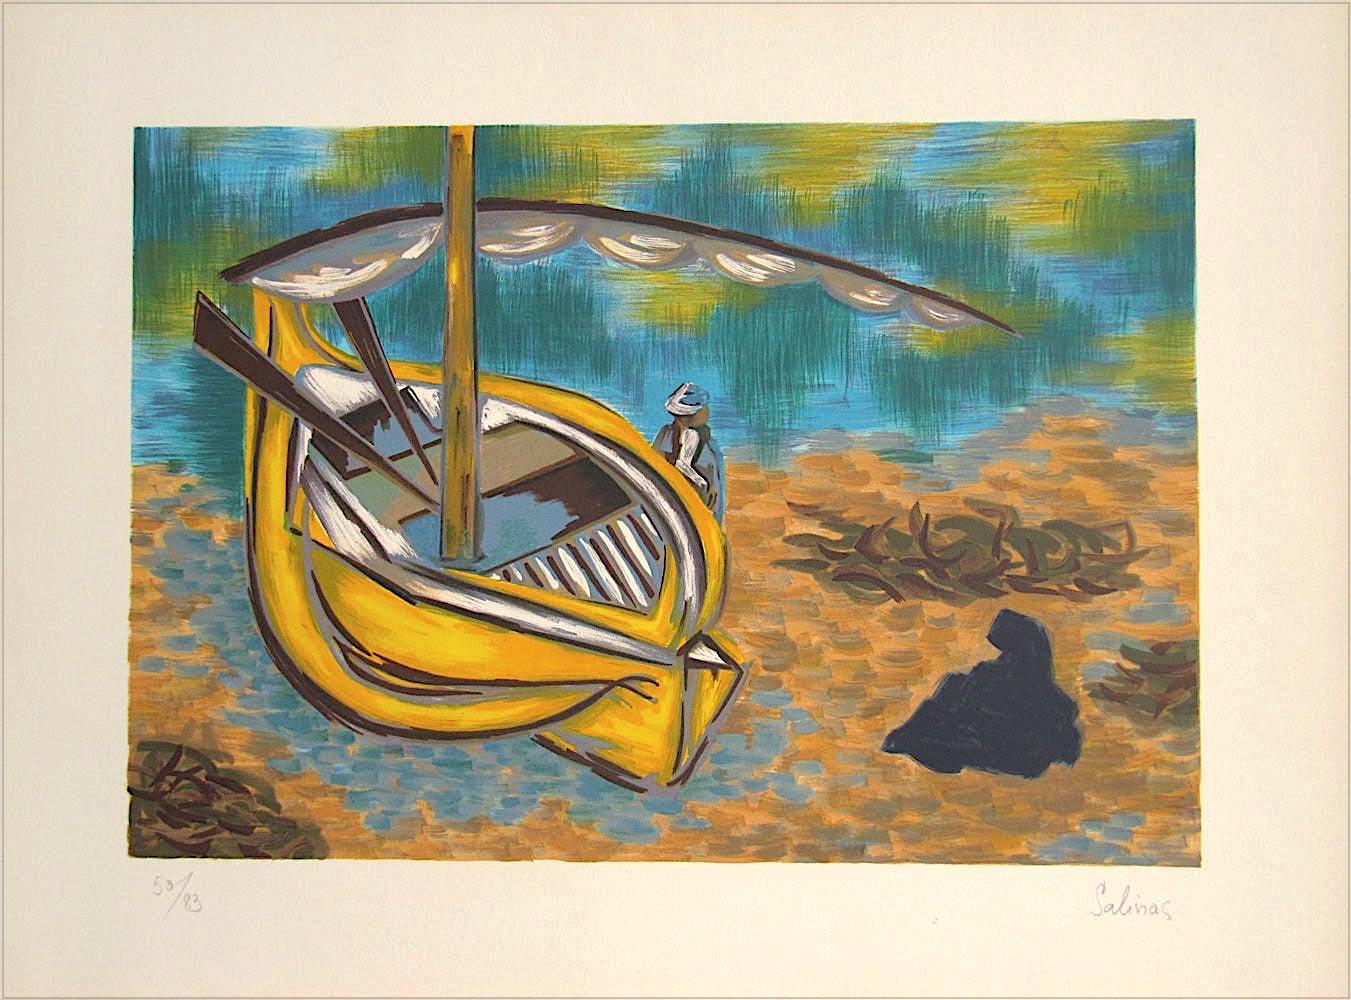 Lithographie signée YELLOW BOAT, homme allongé sur un bateau de voile jaune, eau turquoise